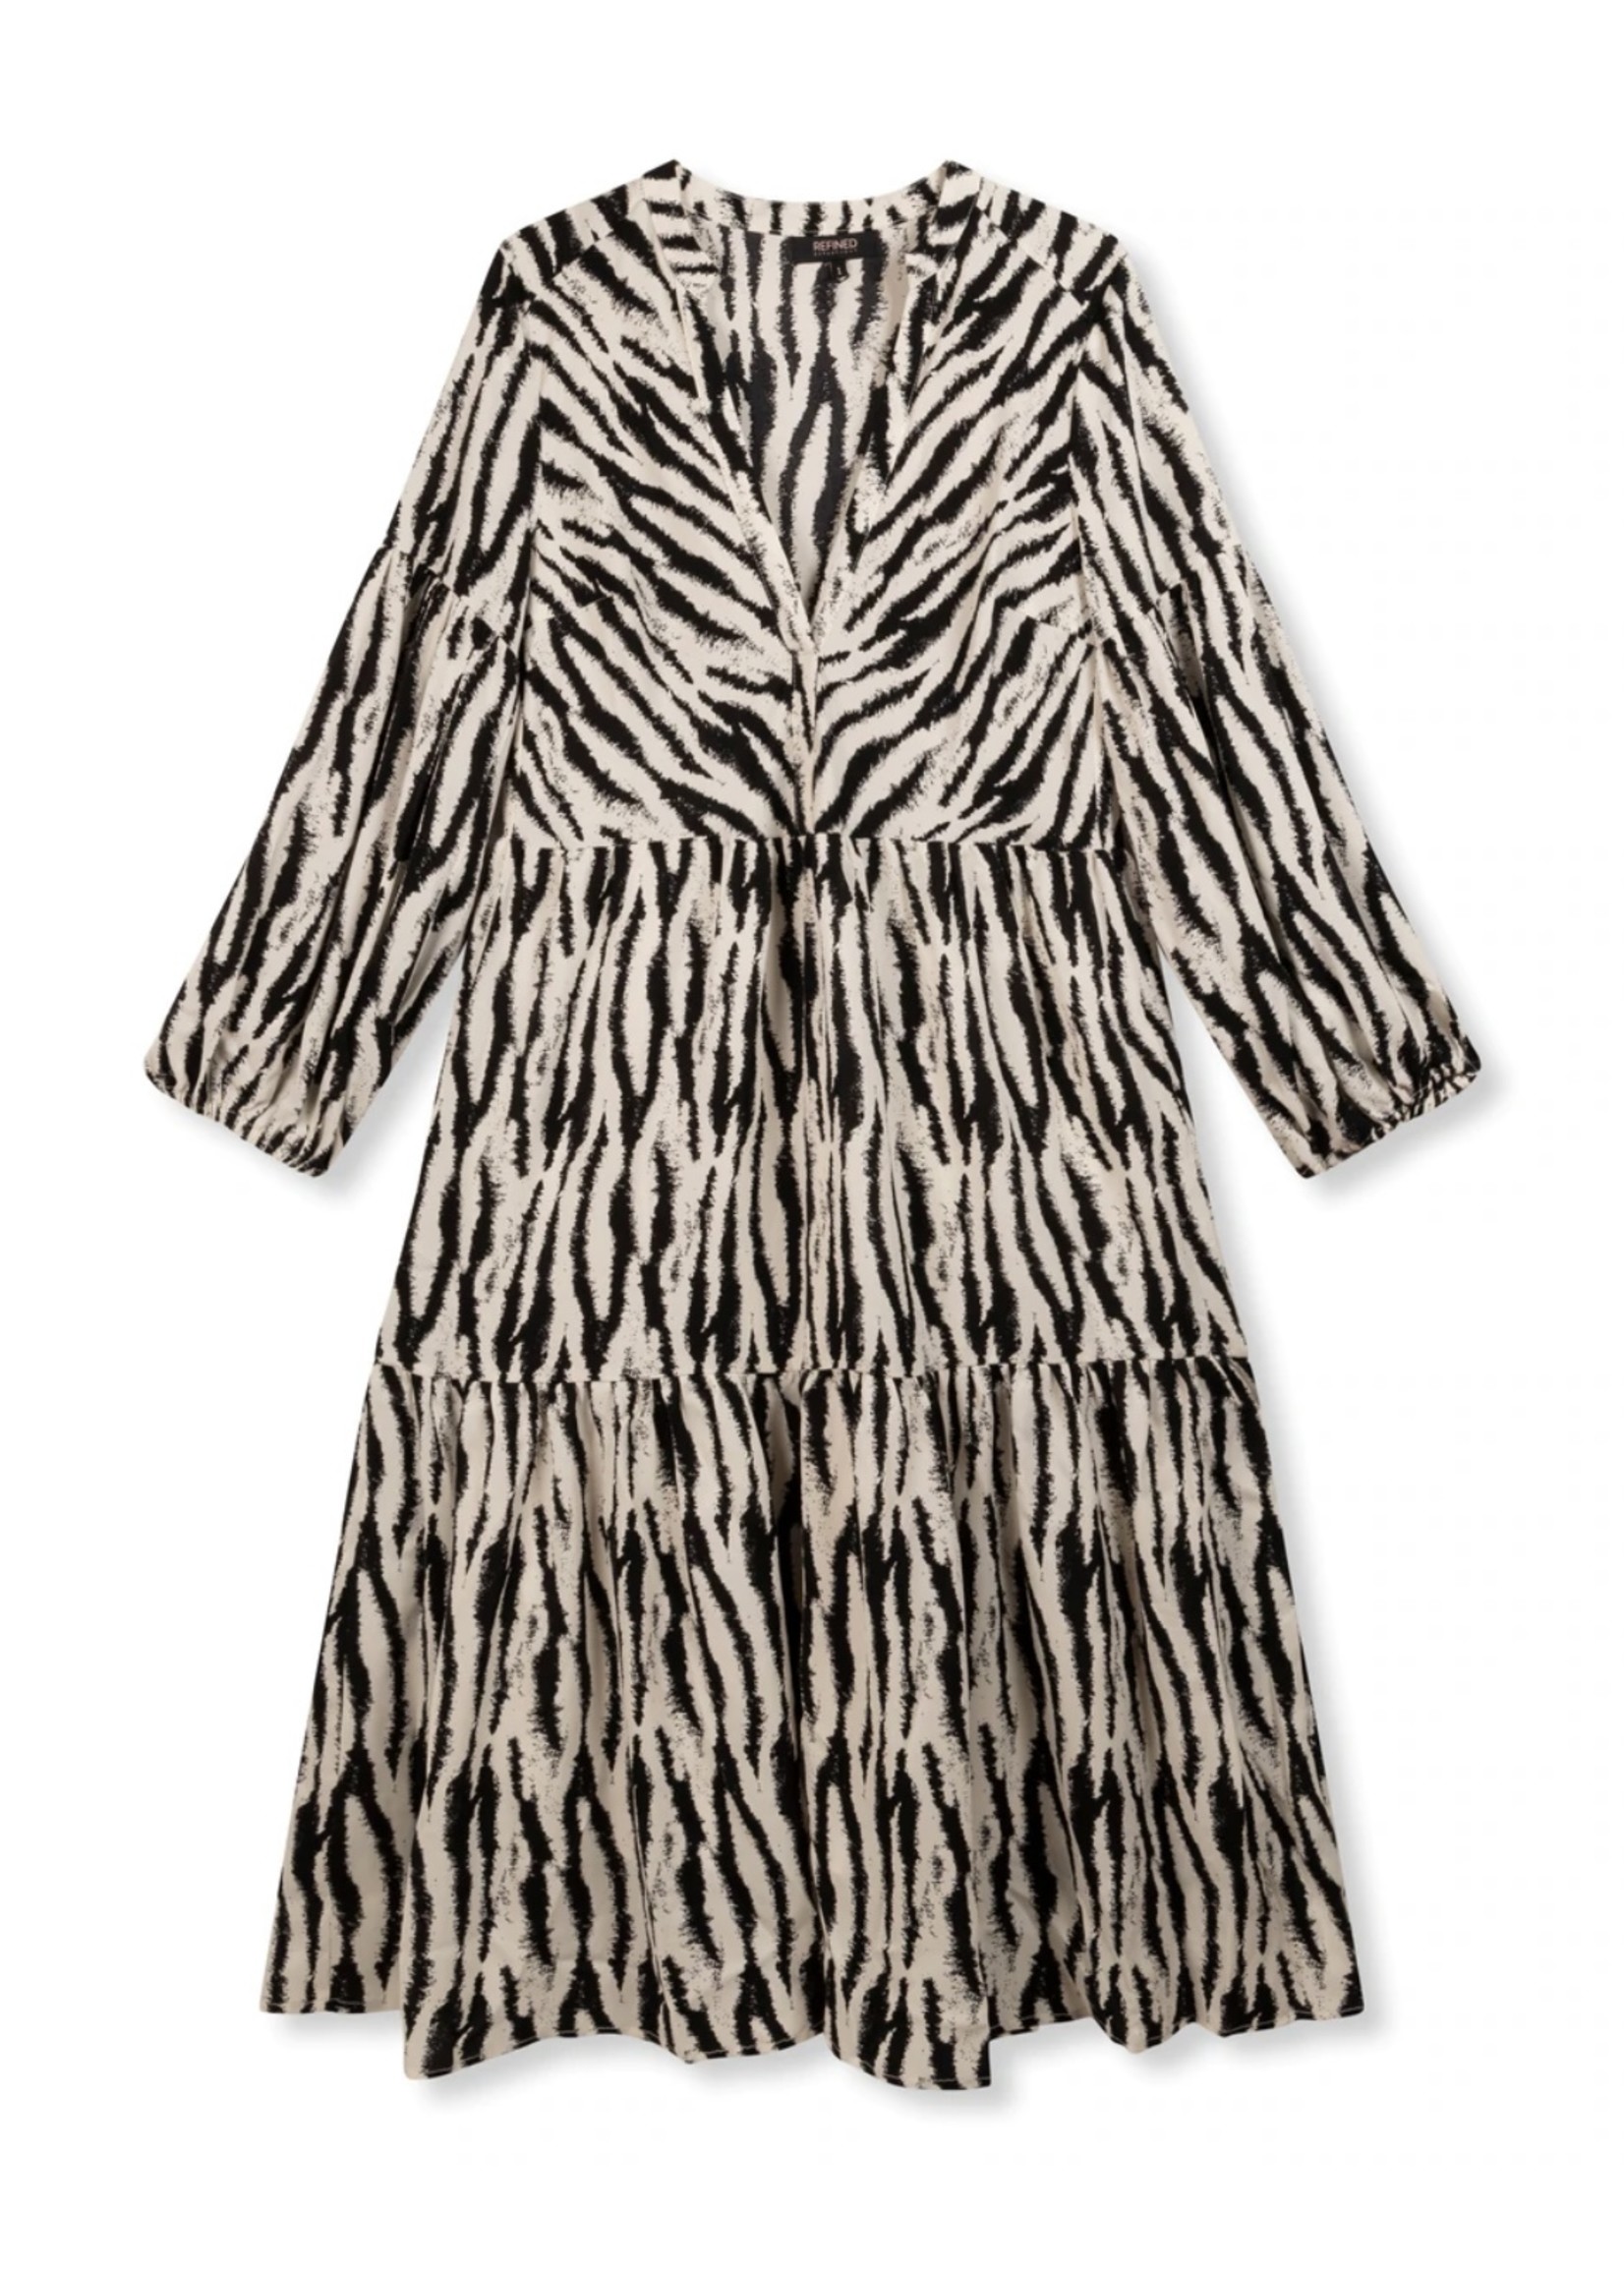 REFINED DEPARTMENT Flowy Zebra Dress Chelsea